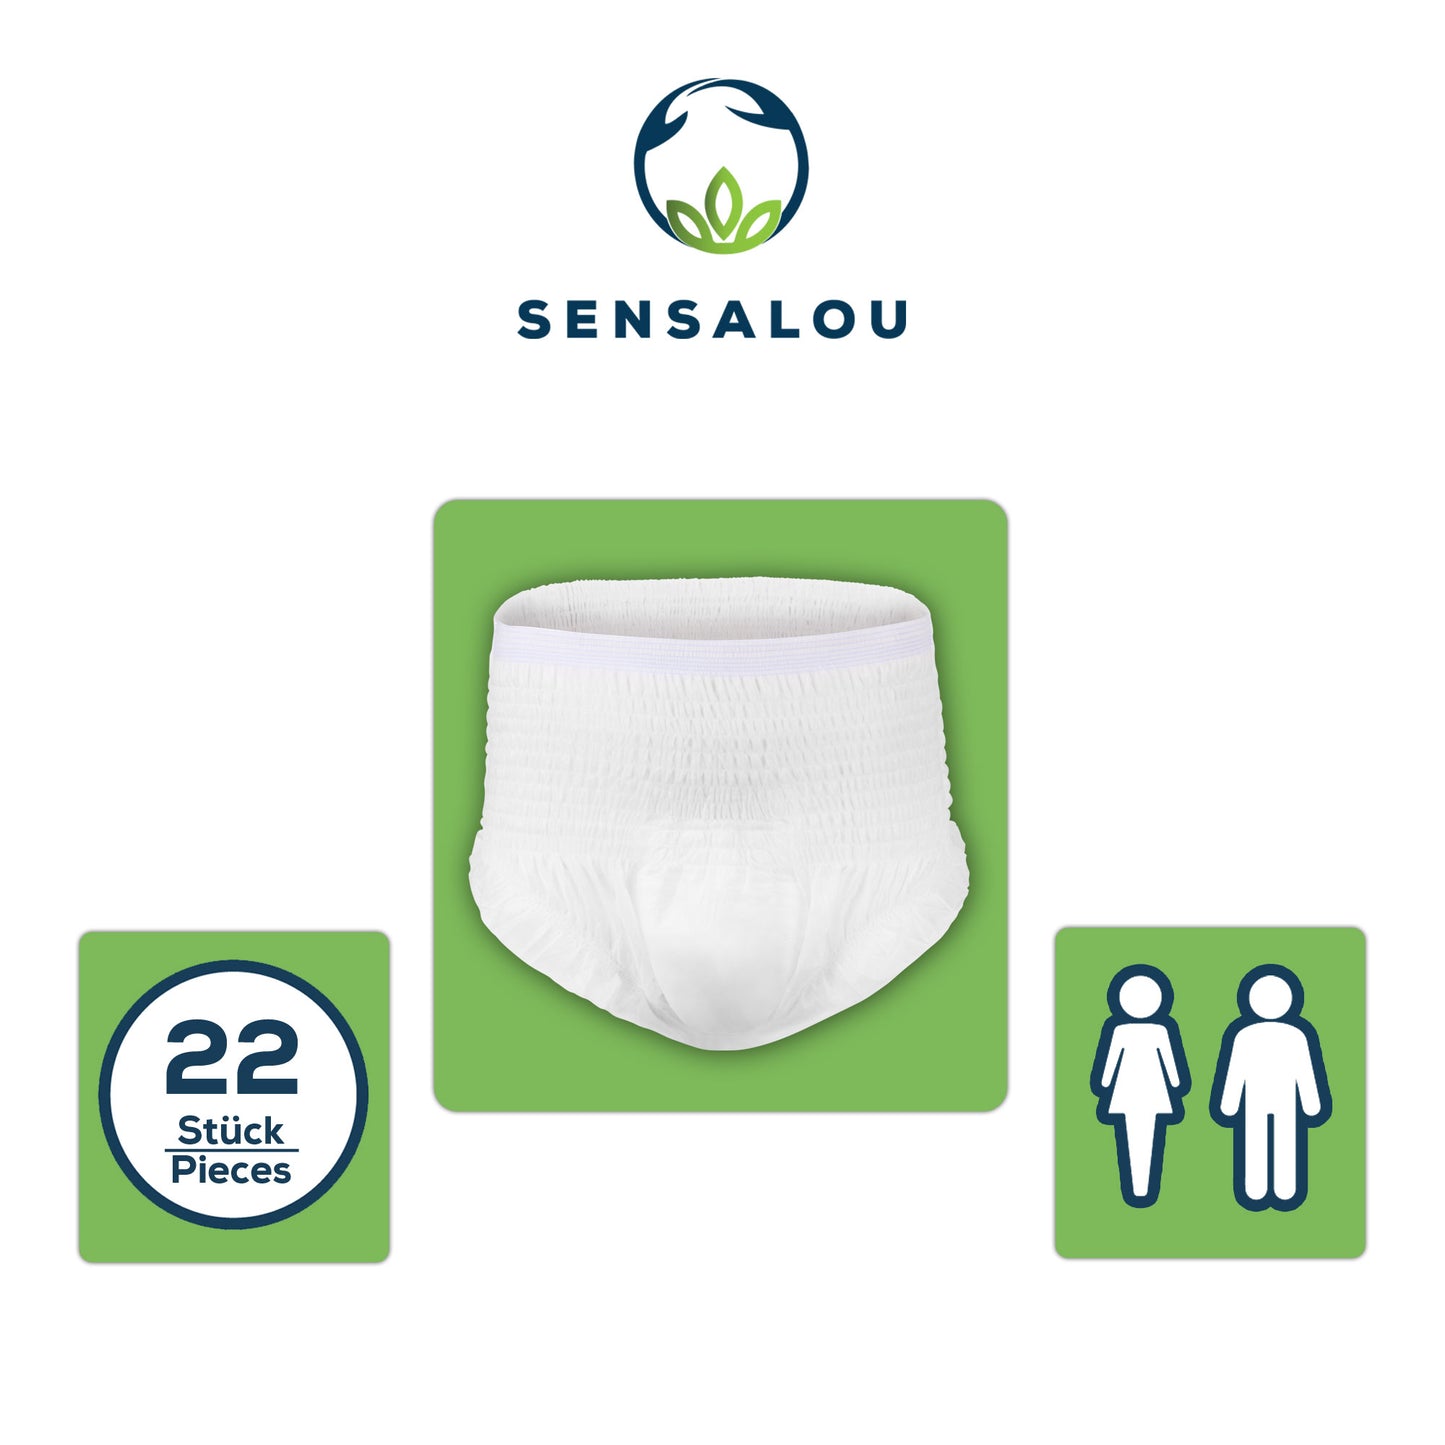 Sensalou Pants Maxi - Size M